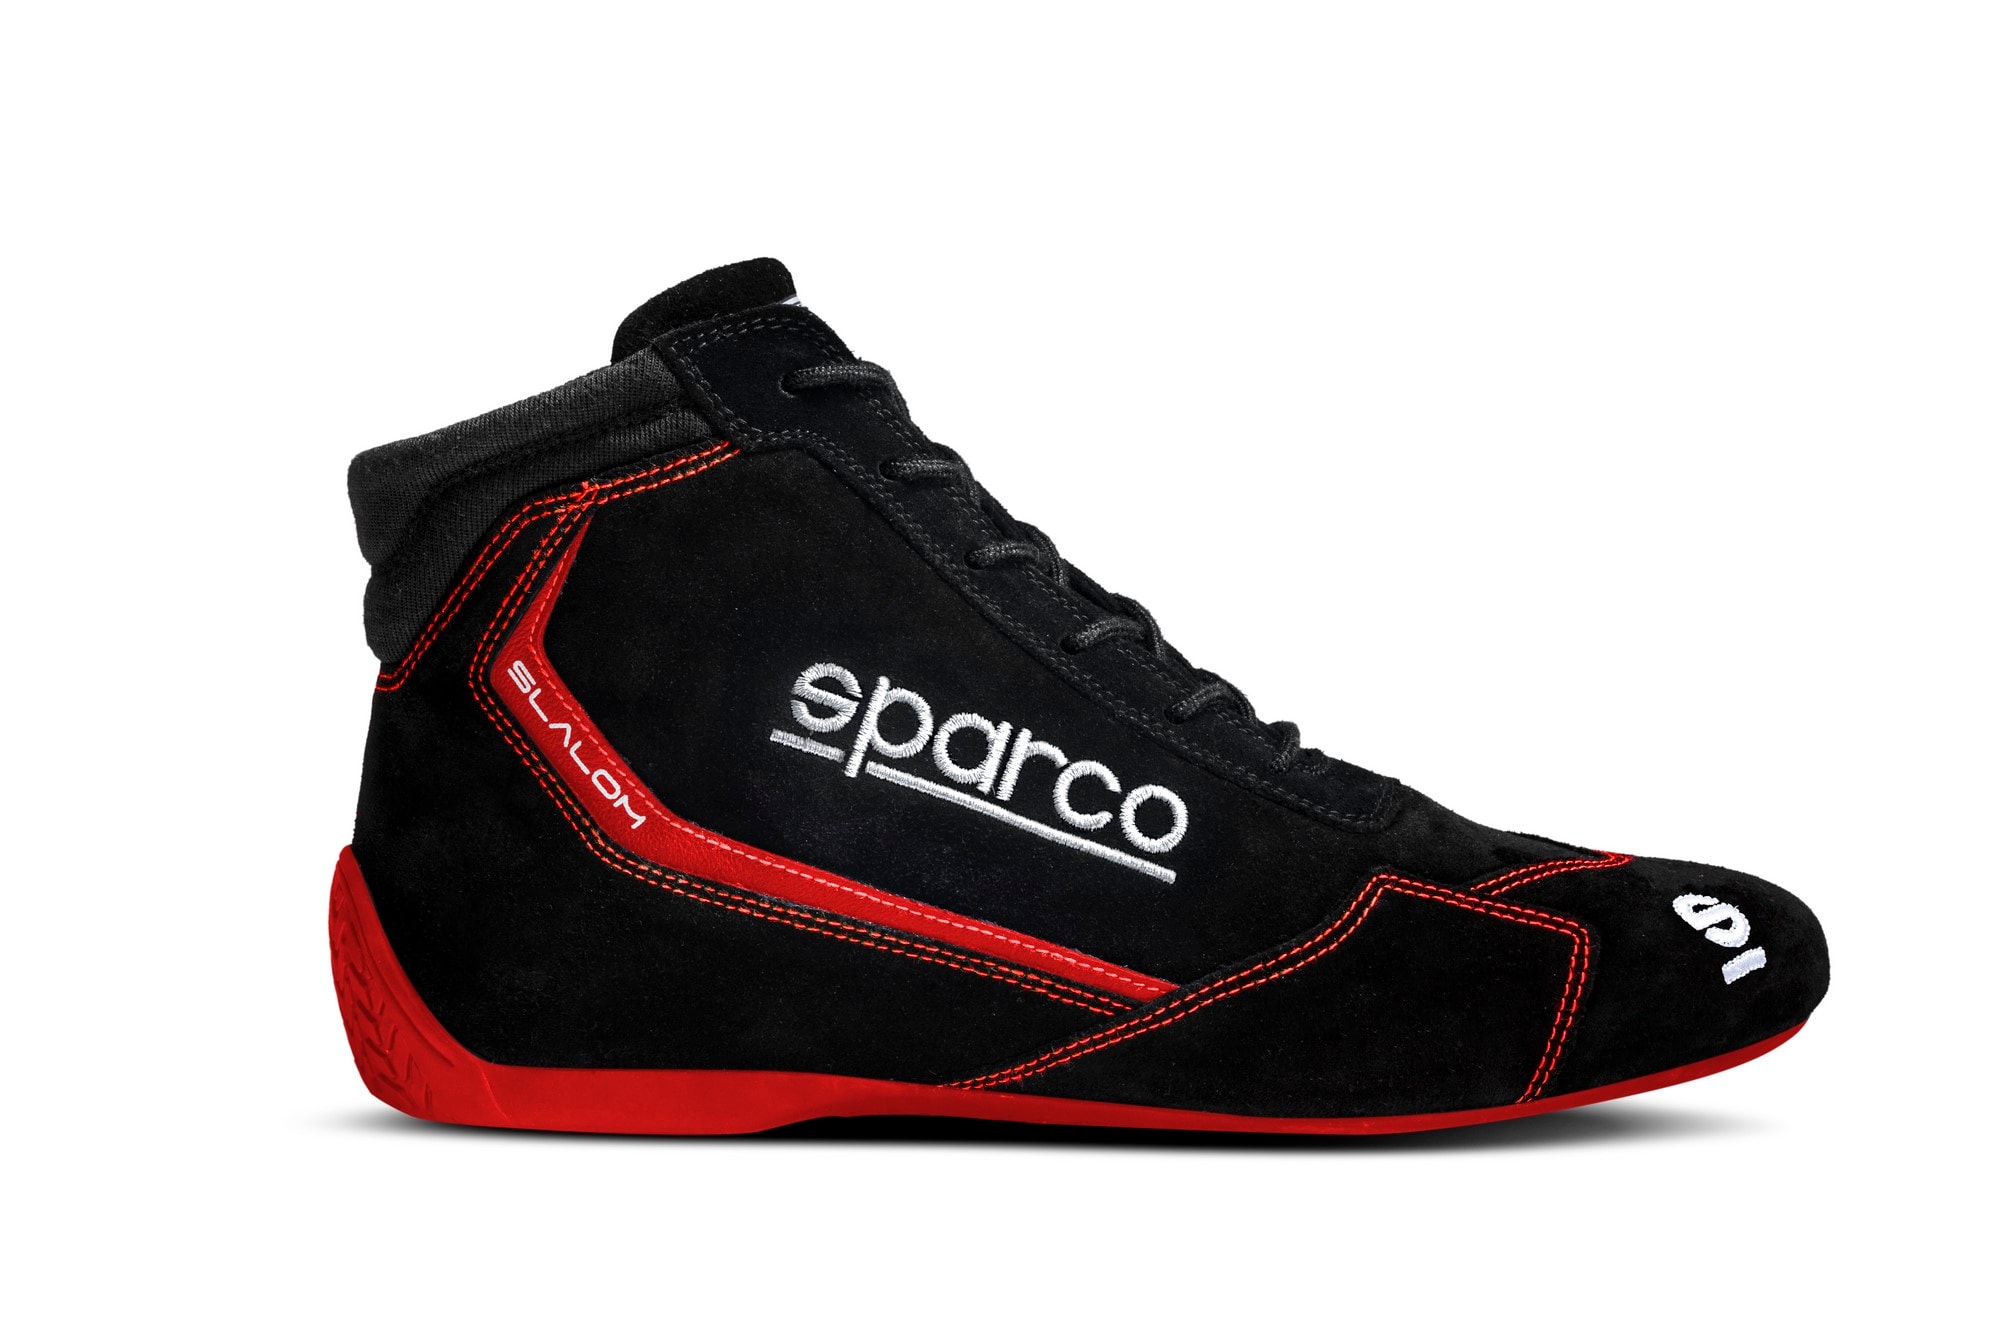 Kengät Sparco Slalom Musta/punainen